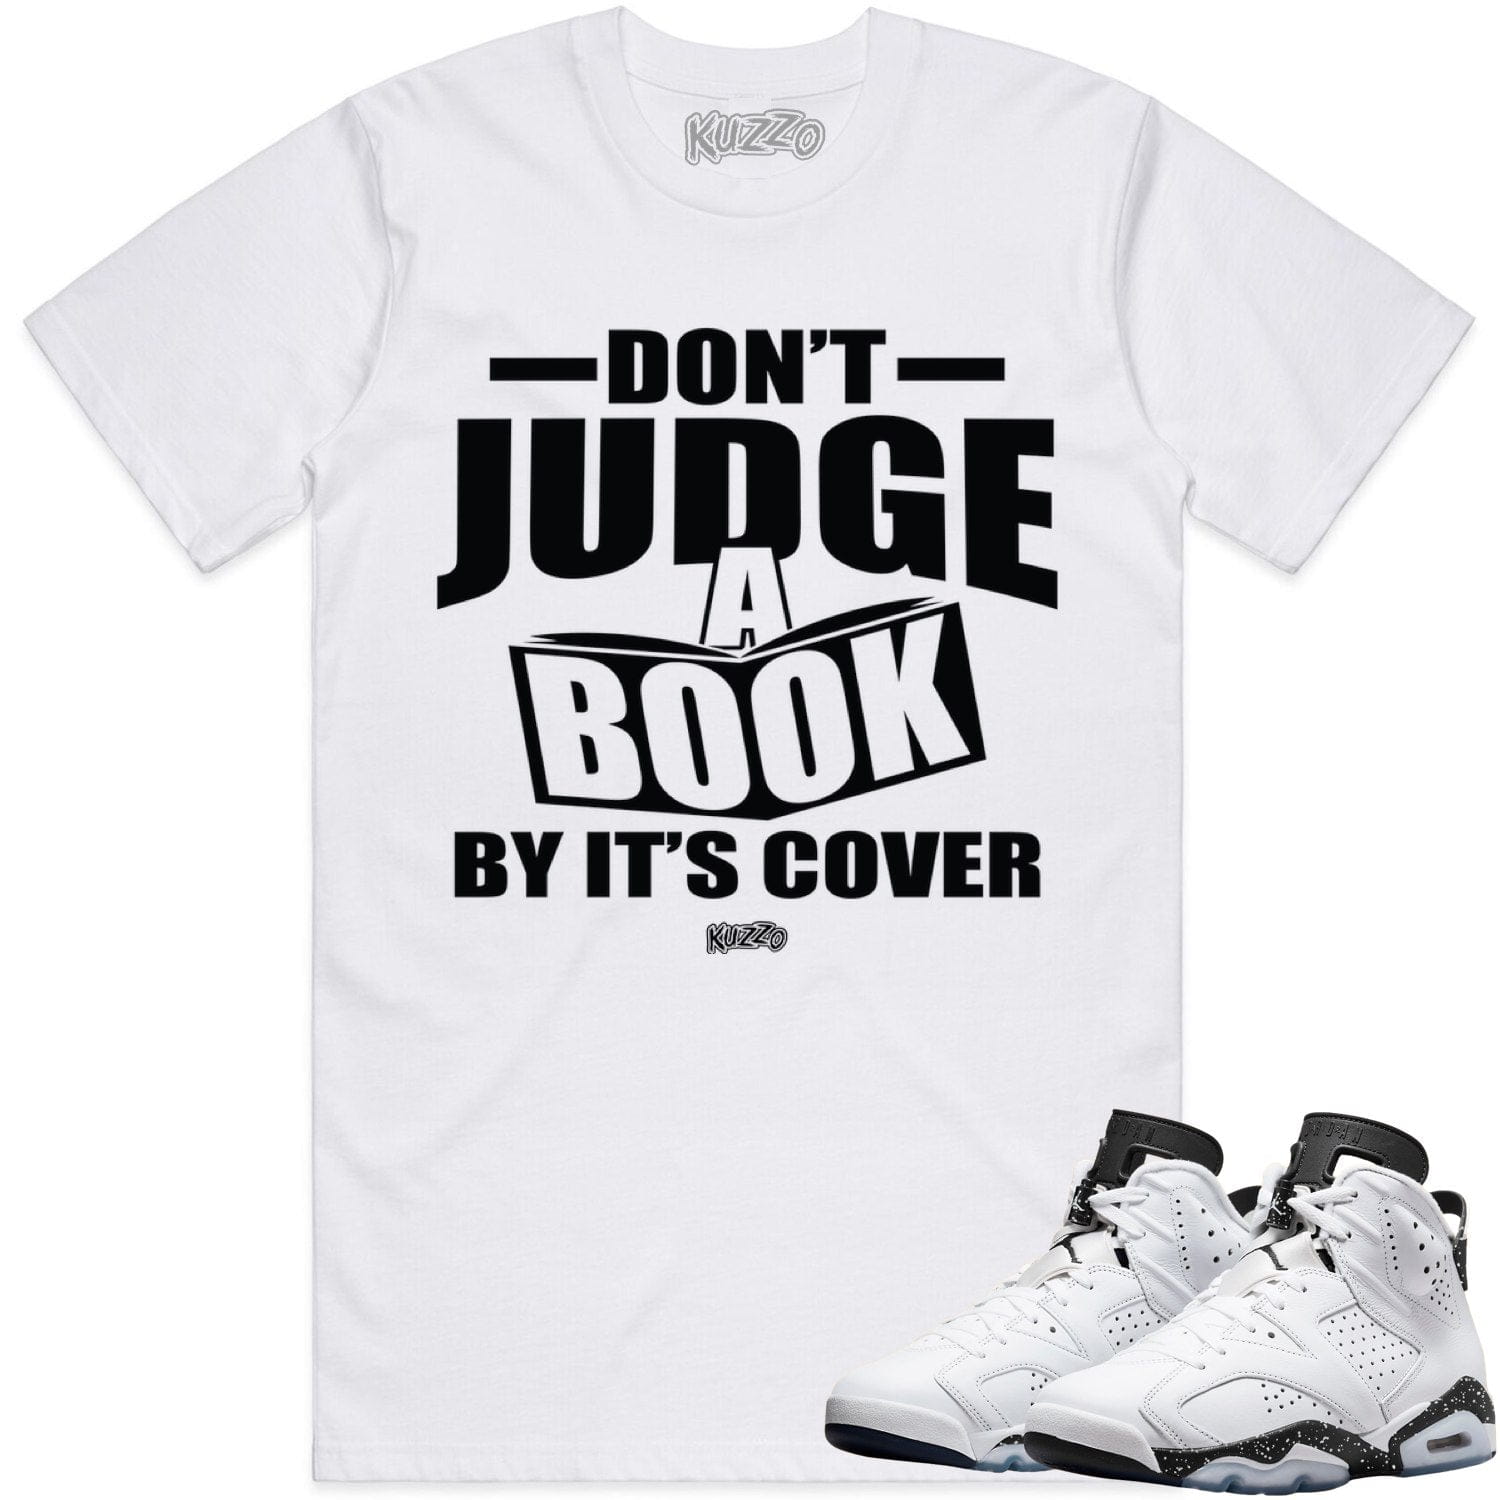 Reverse Oreo 6s Shirt - Jordan 6 Reverse Oreo Sneaker Tees - Book